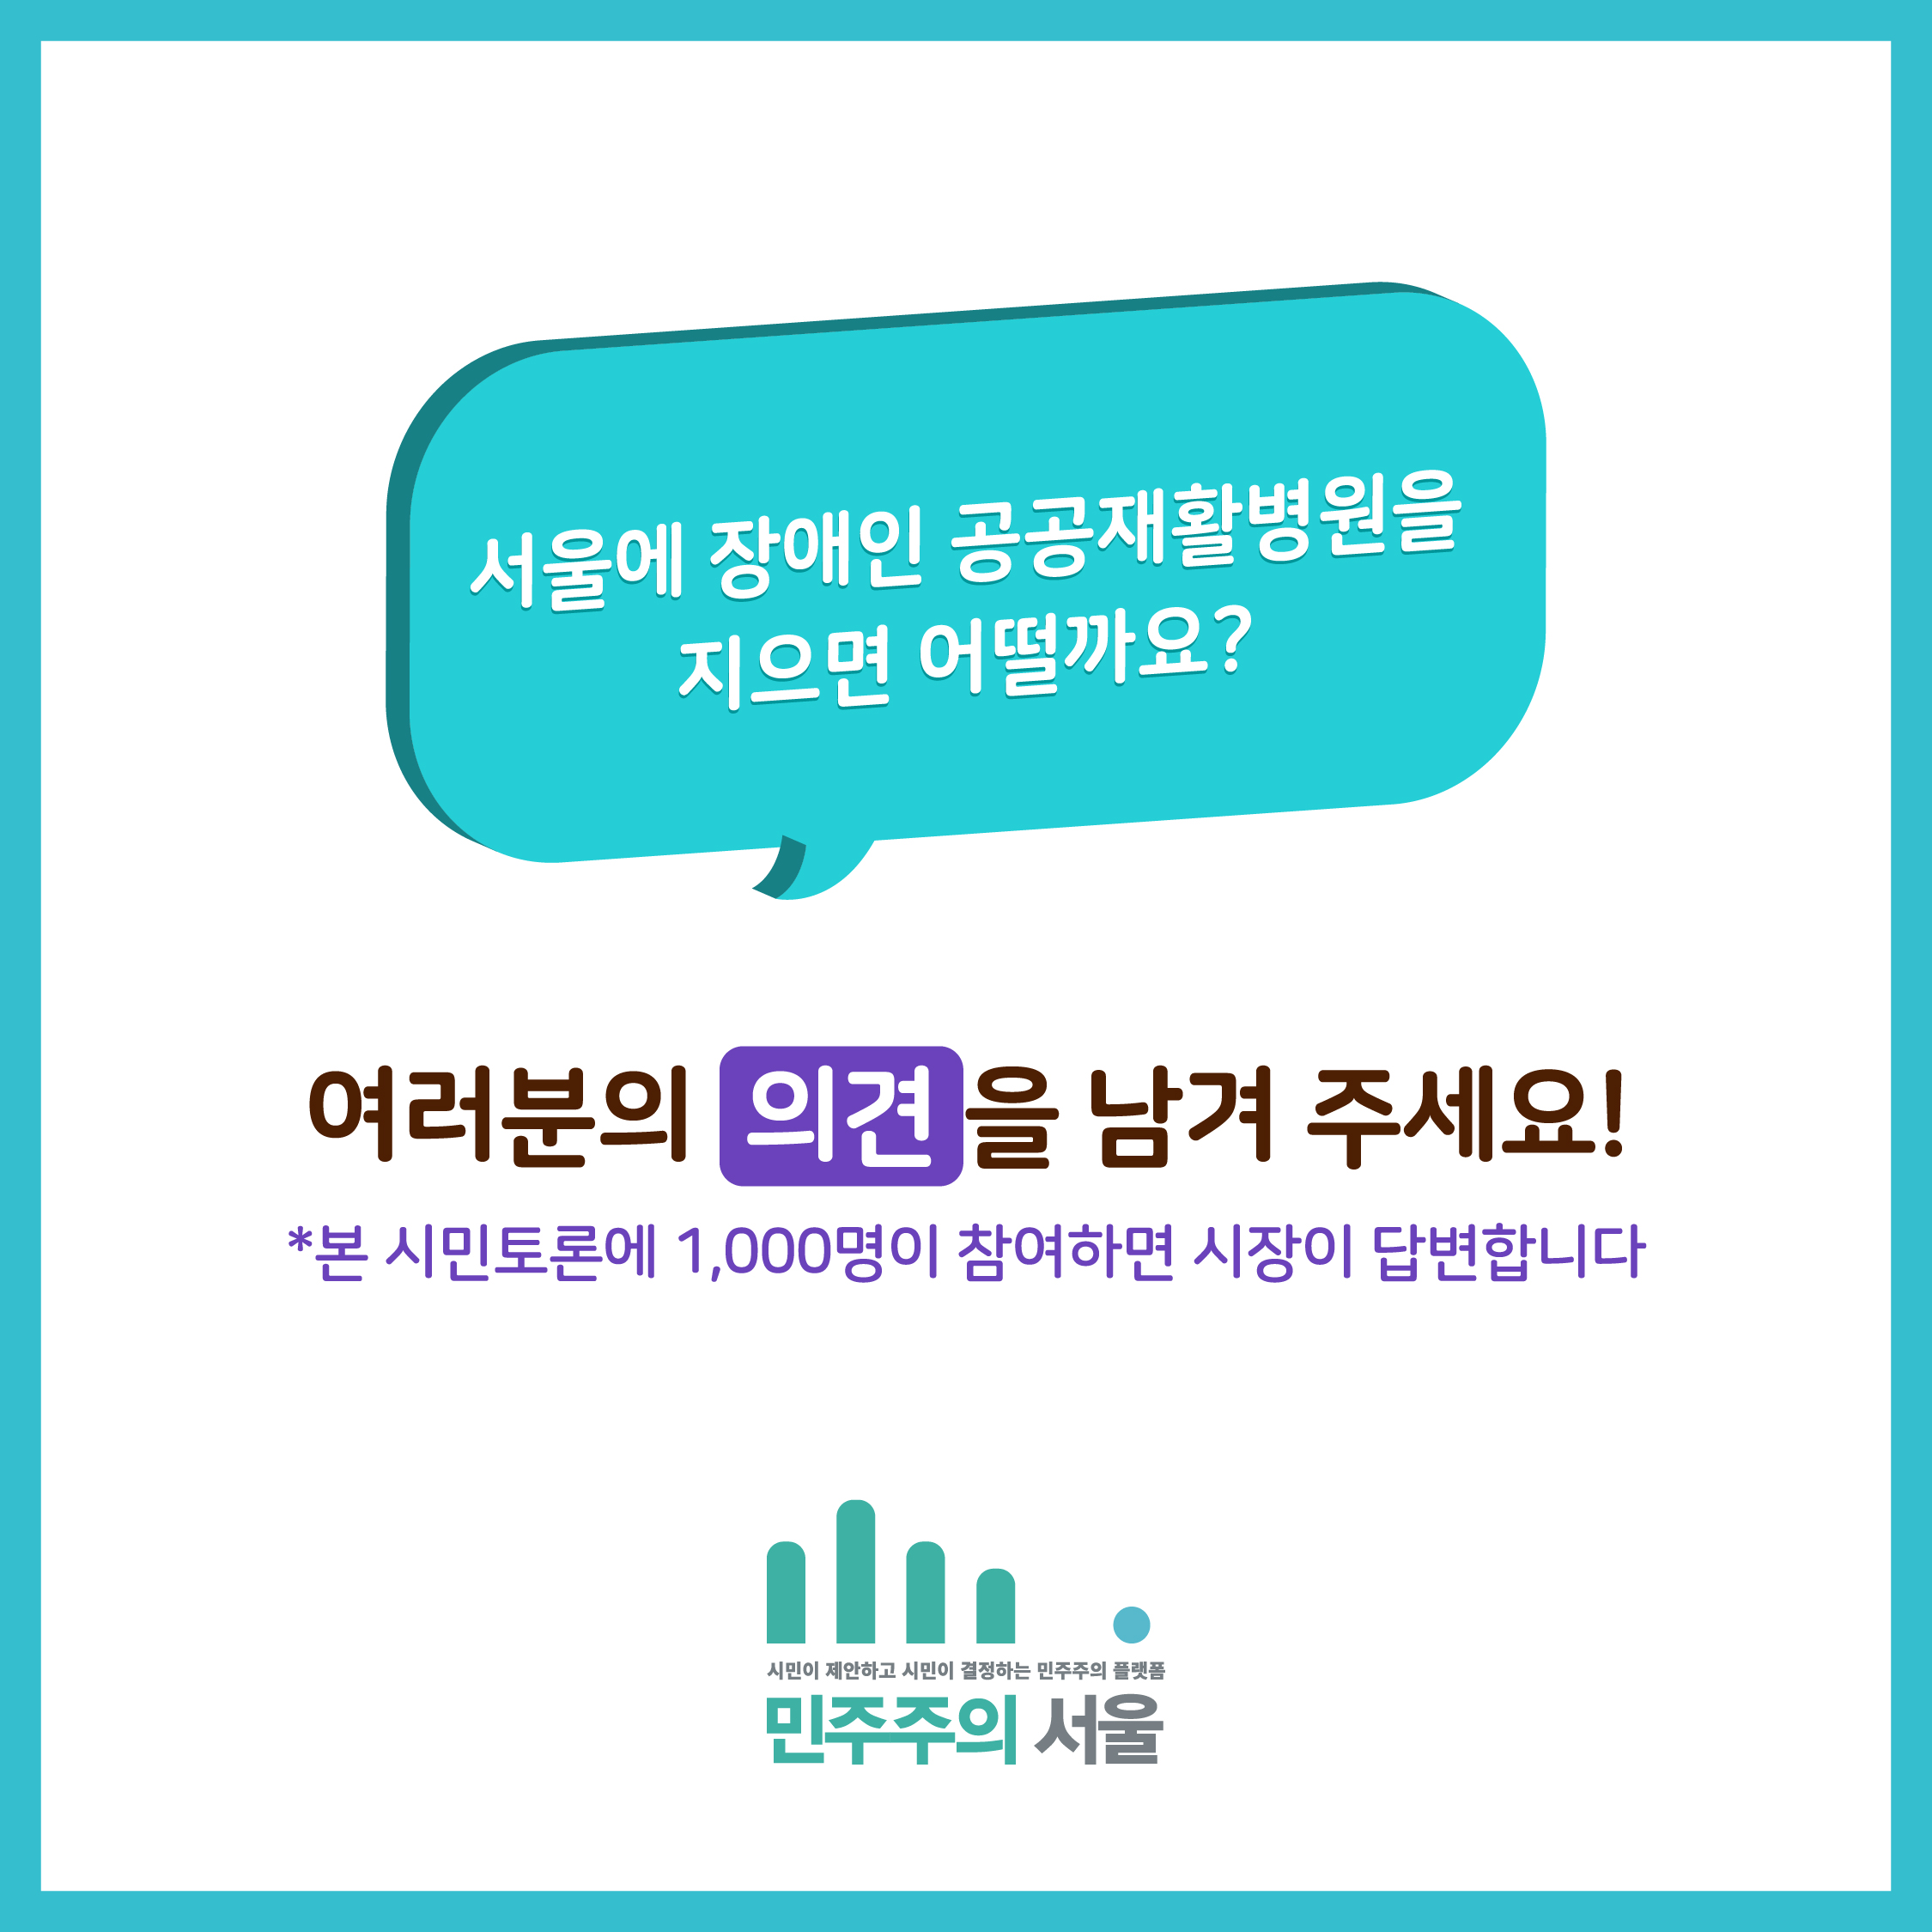 서울에 장애인 공공재활병원을 지으면 어떨까요? 여러분의 의견을 남겨 주세요! *본 시민토론에 1,000명이 참여하면 시장이 답변합니다.